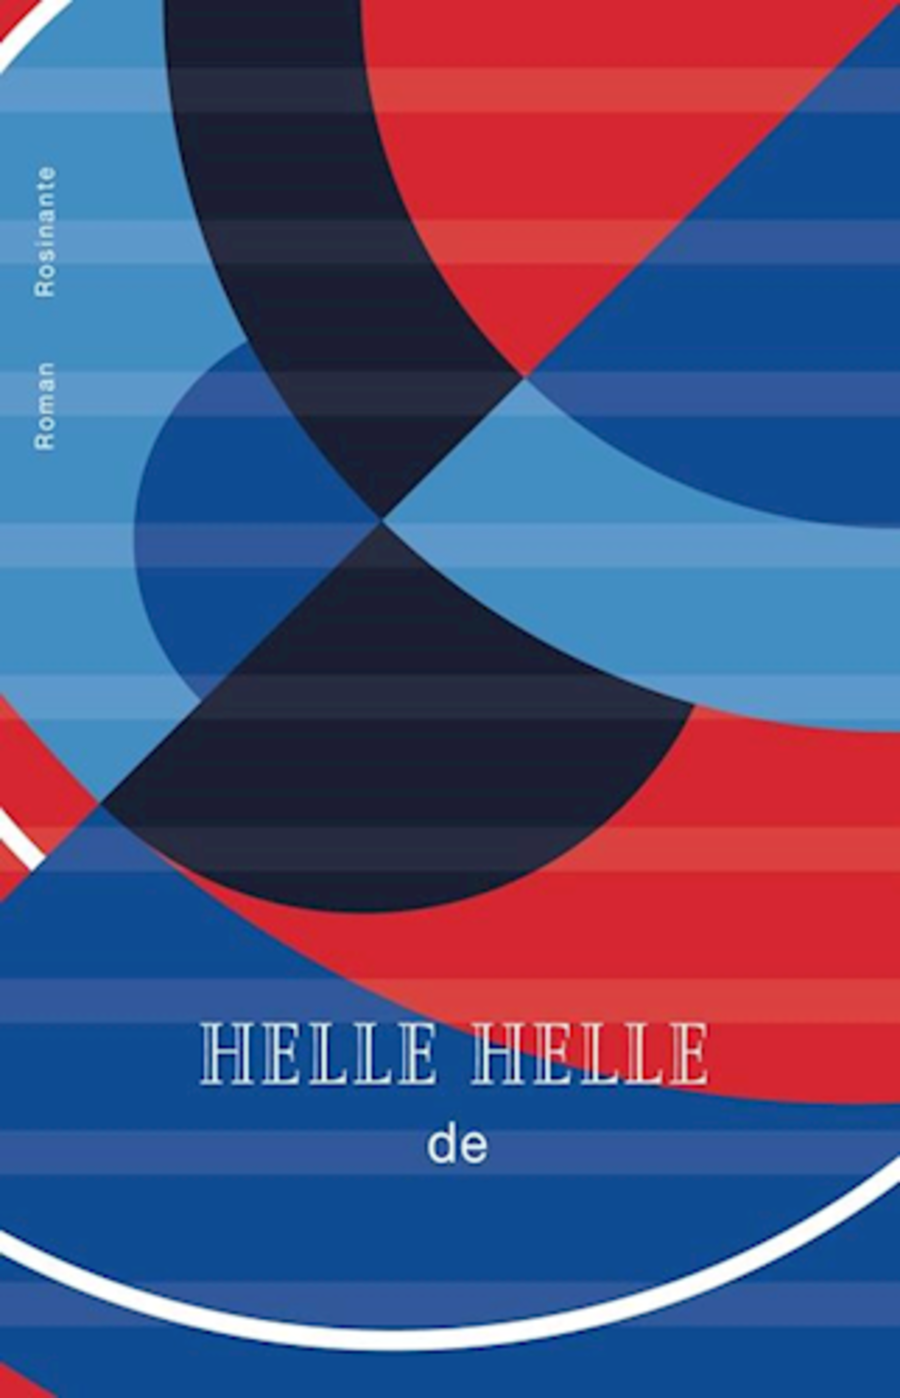 Roman "de" af Helle Helle er nomineret til Nordisk Råds Litteraturpris.